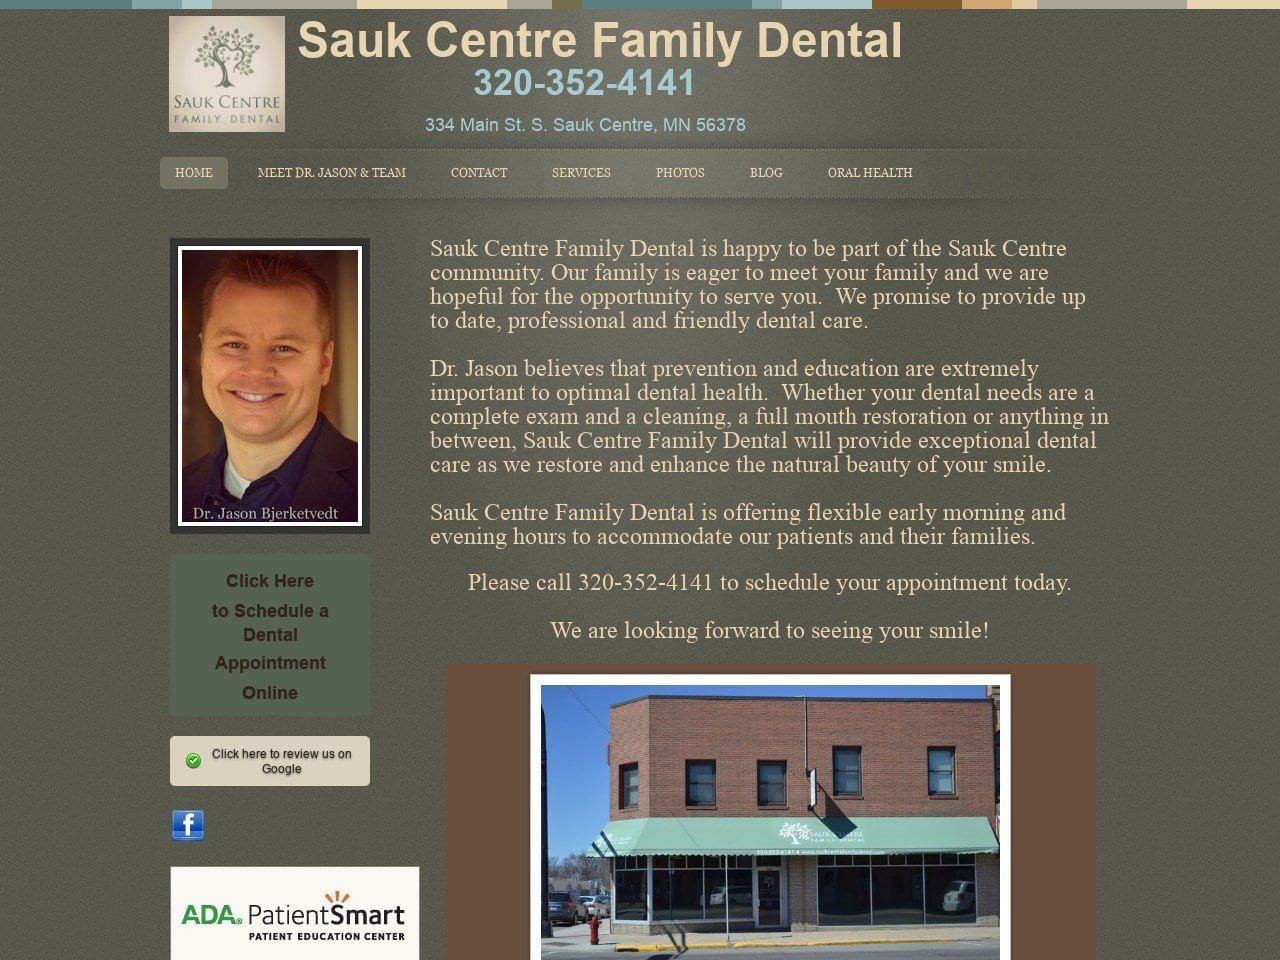 Sauk Centre Family Dental Website Screenshot from saukcentrefamilydental.com